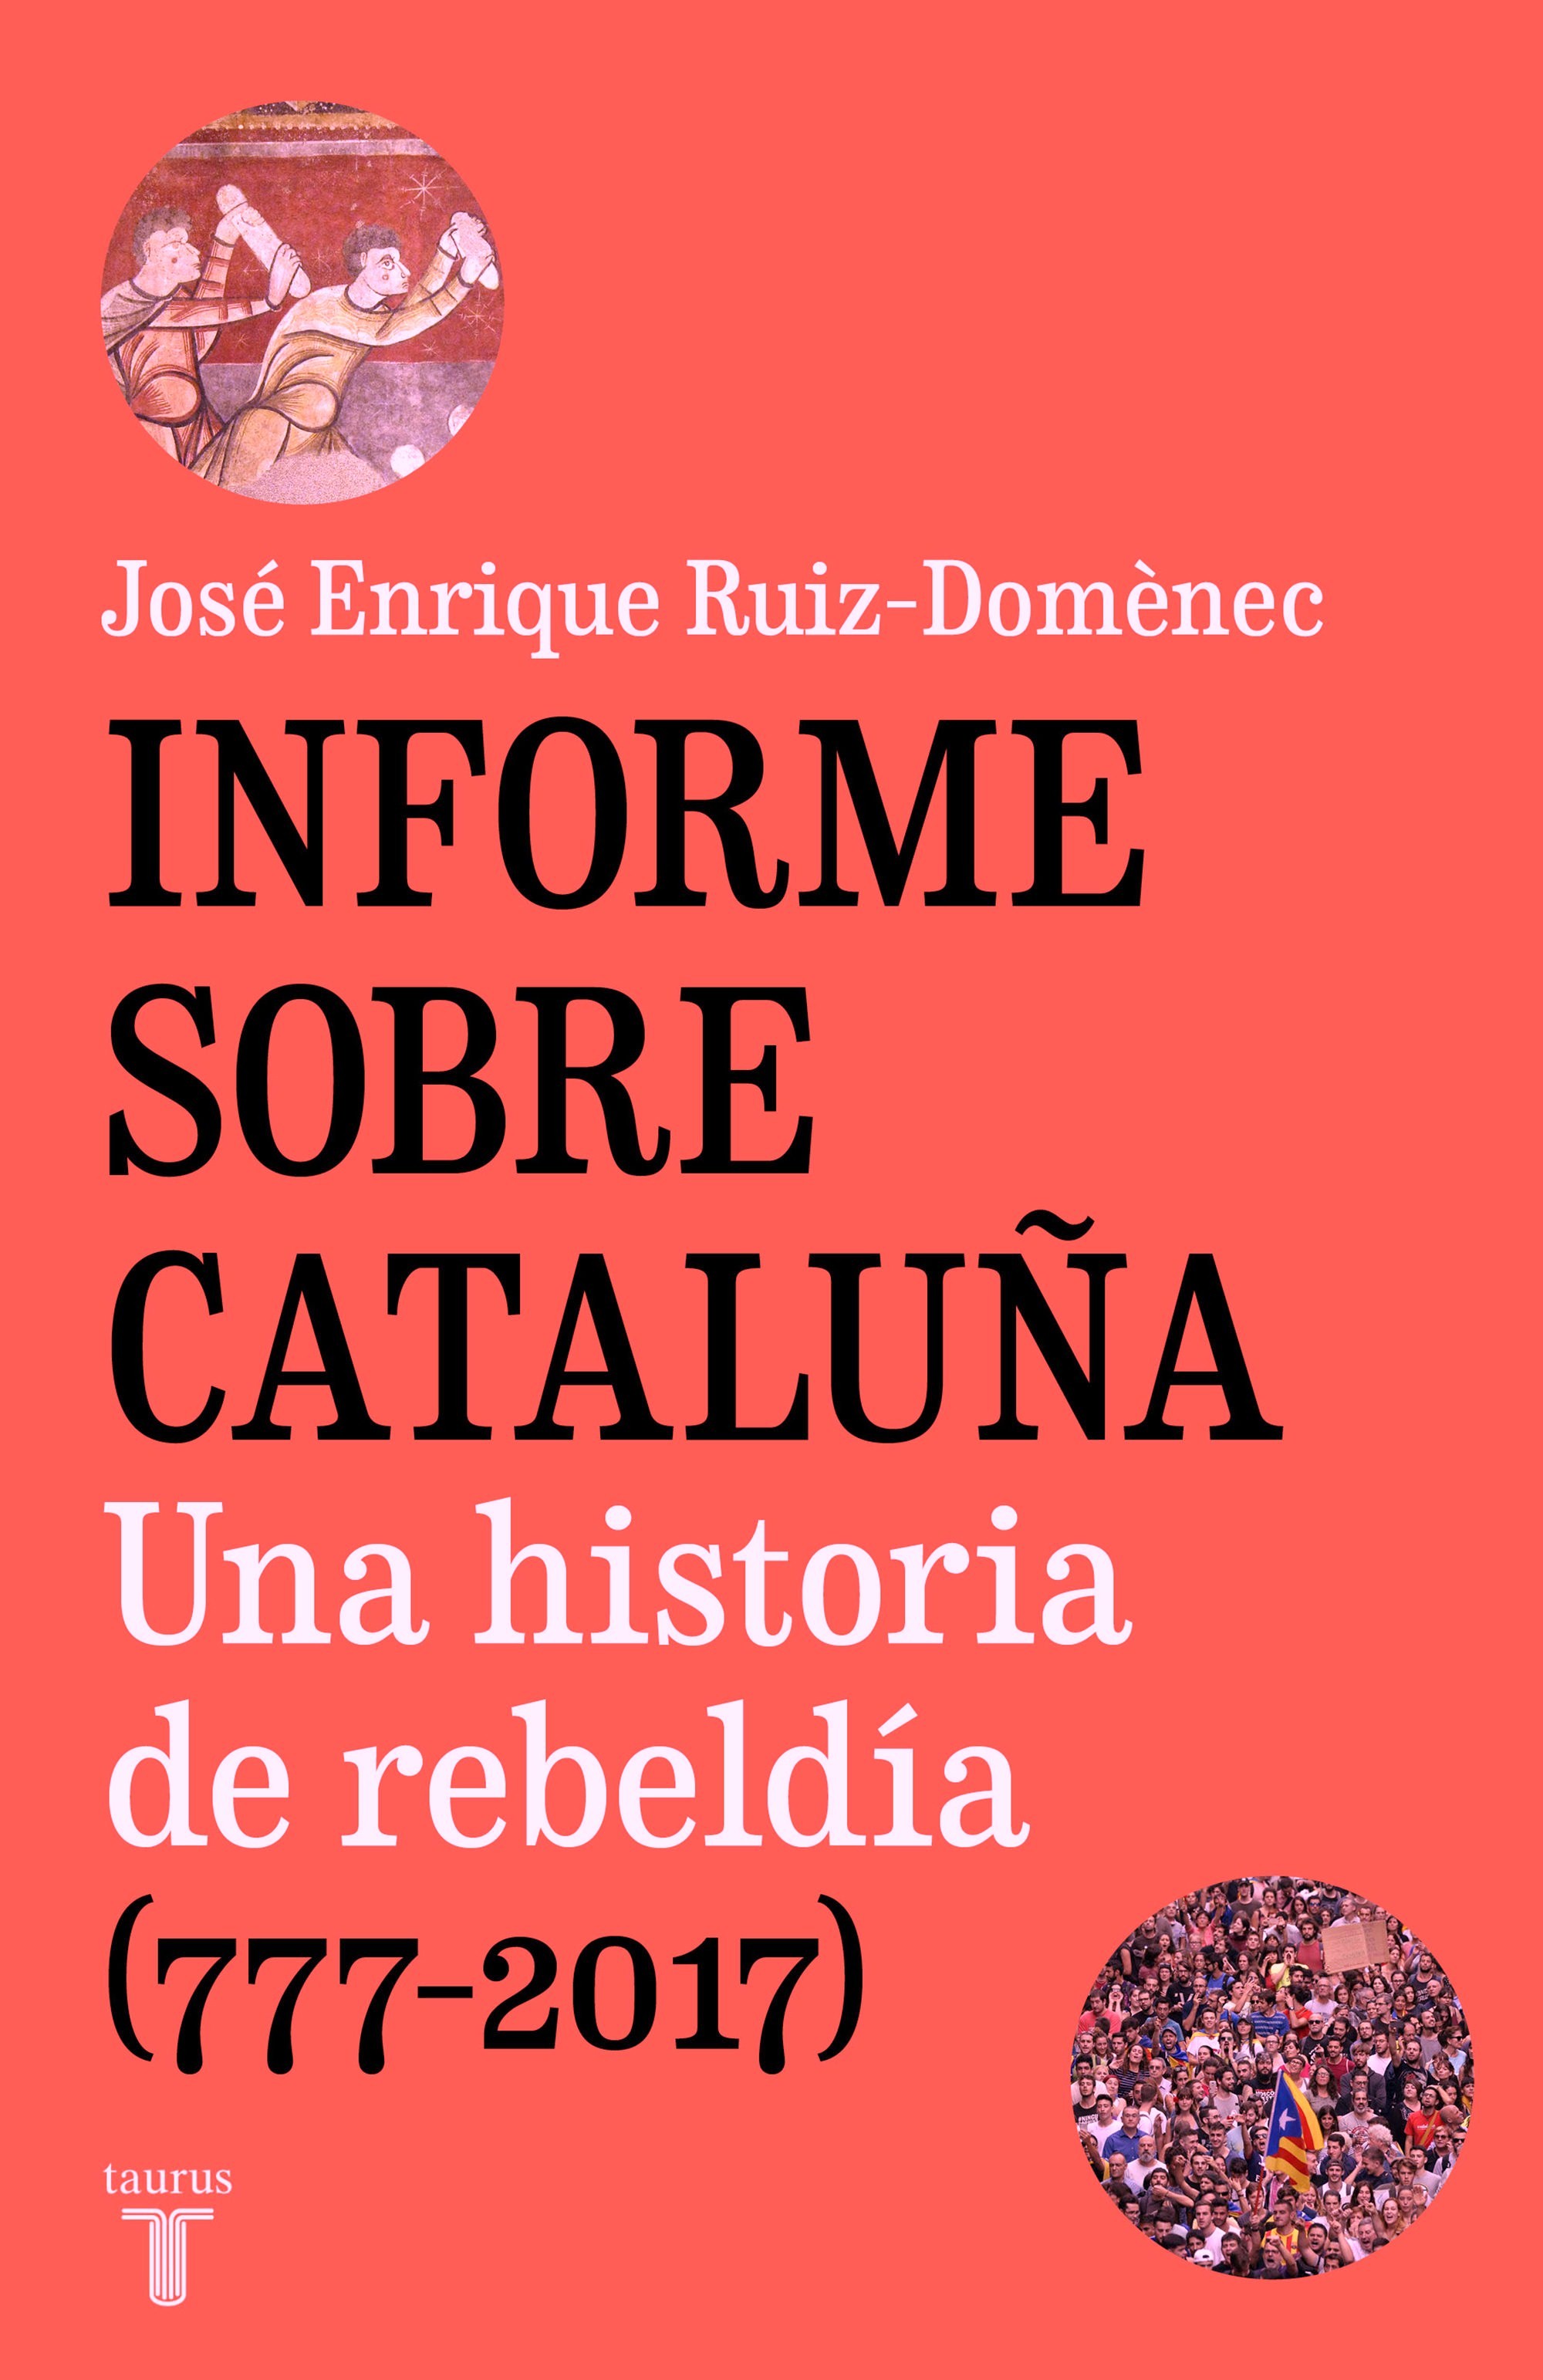 Presentación del libro Informe sobre Cataluña.Una historia de rebeldía (777-2017) de José Enrique Ruiz-Domènec